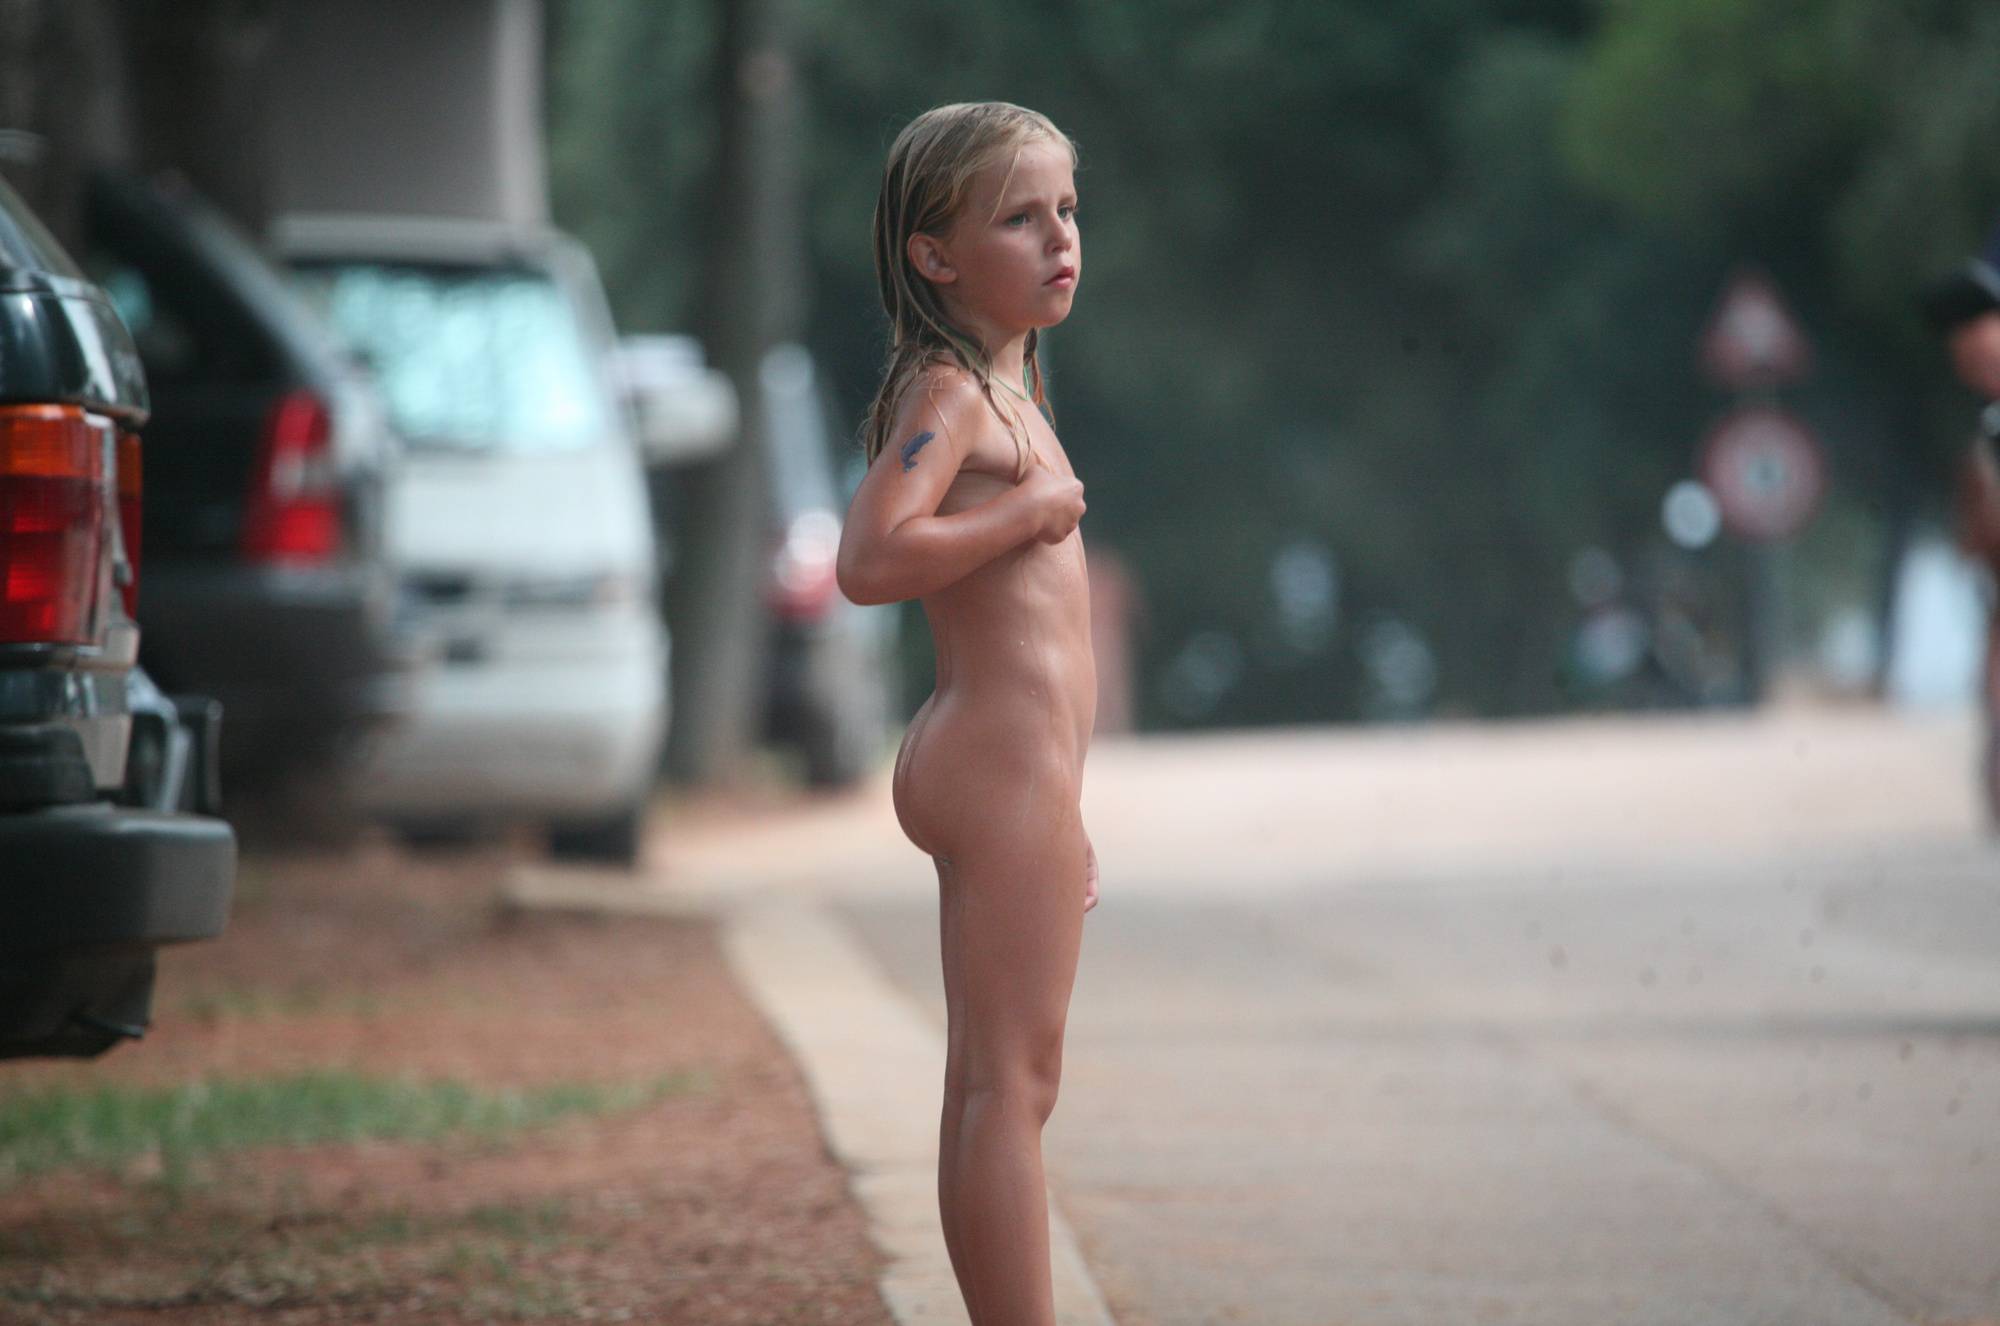 Naturist Child on Sidewalk - 2